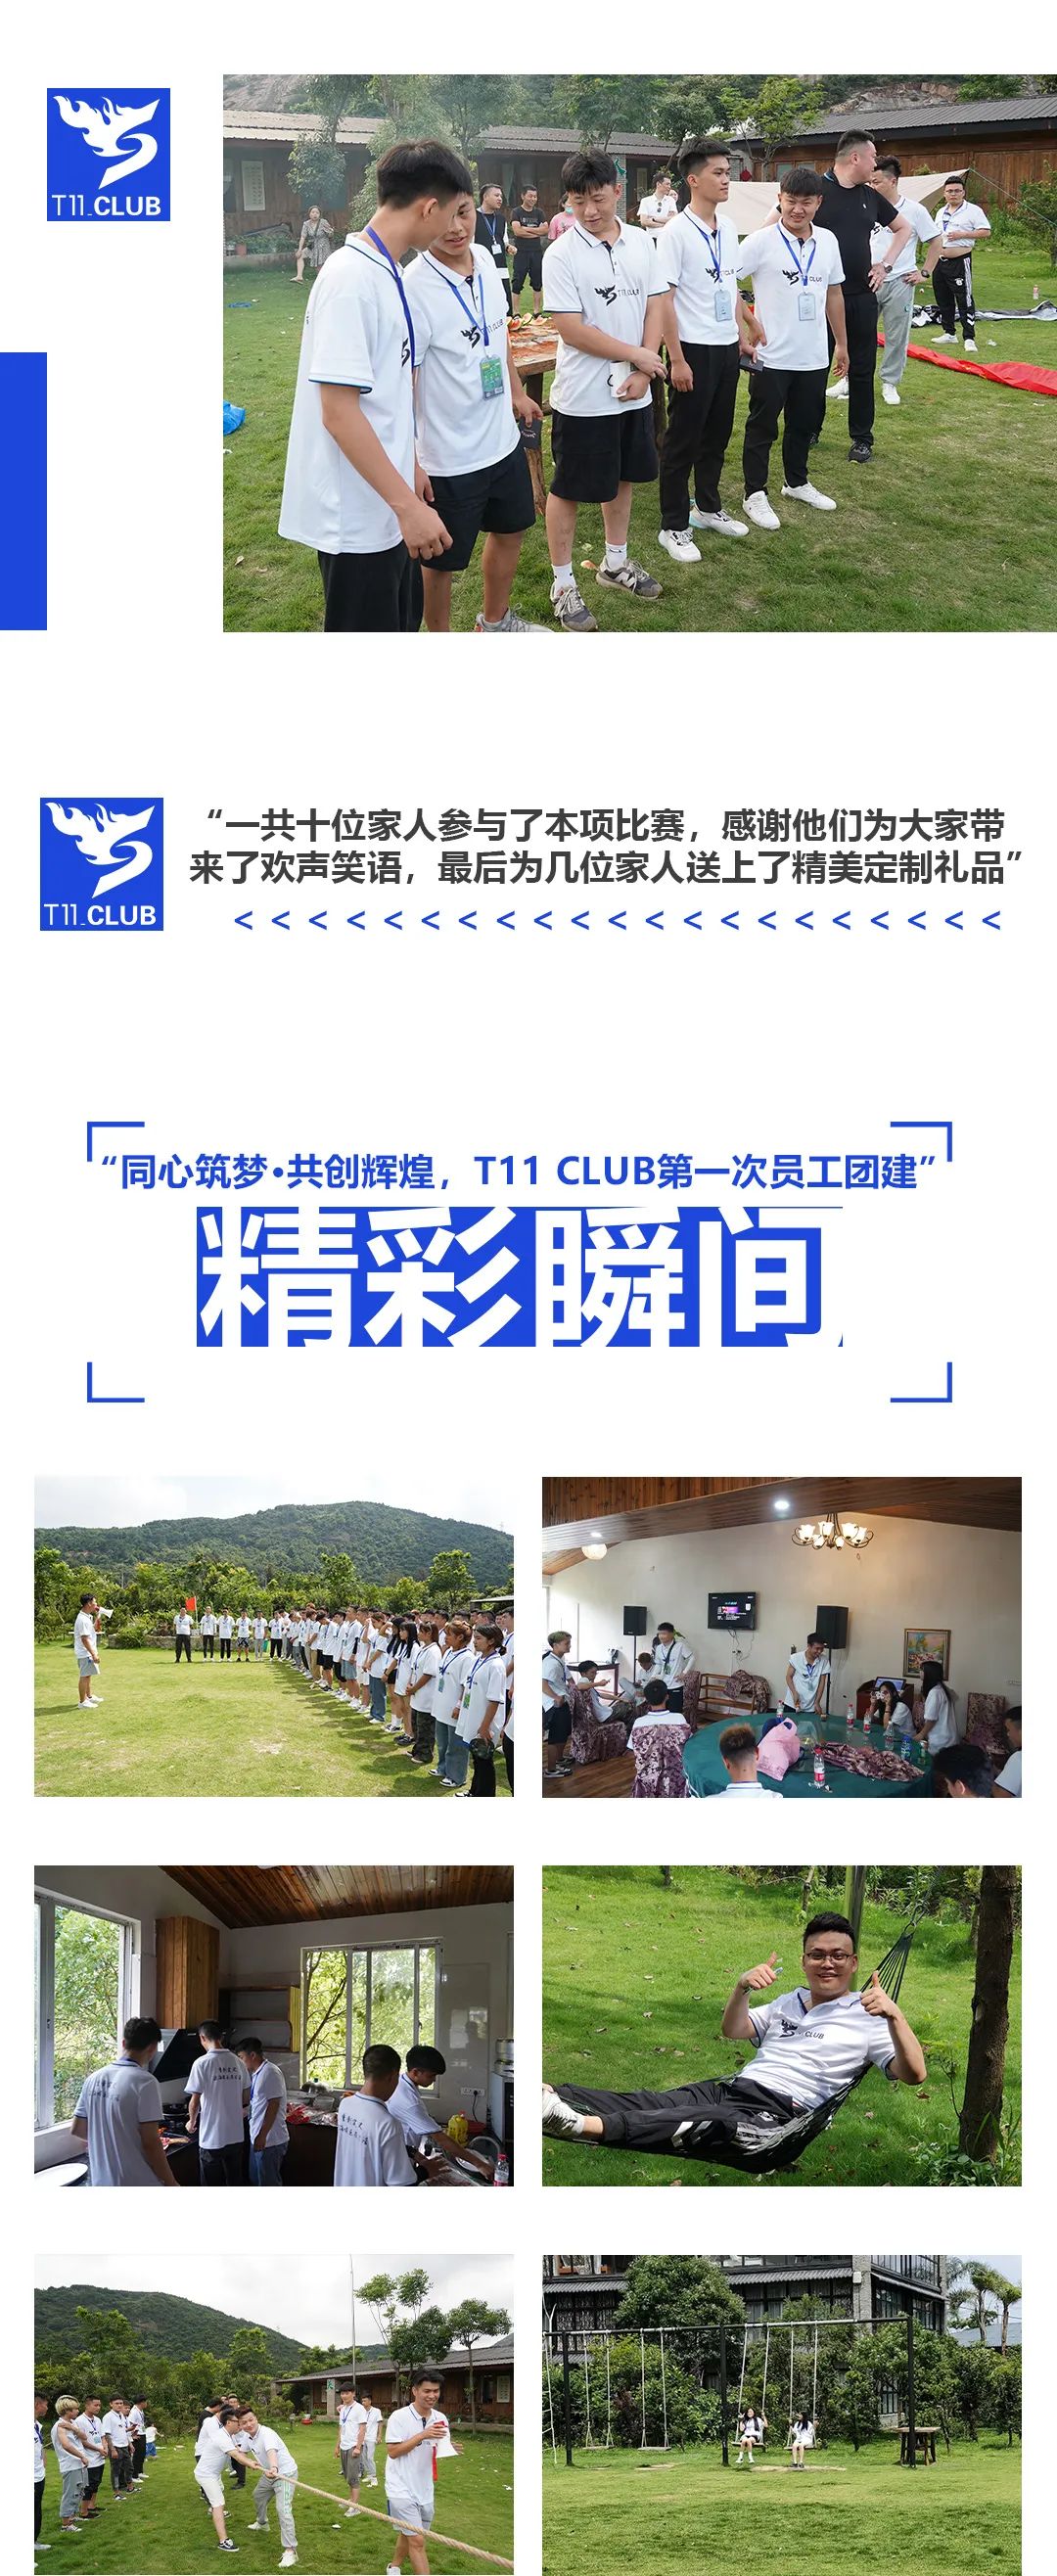 T11 CLUB | 同心筑梦 · 共铸辉煌 第一次户外团建圆满成功-温州T11酒吧/T11 CLUB